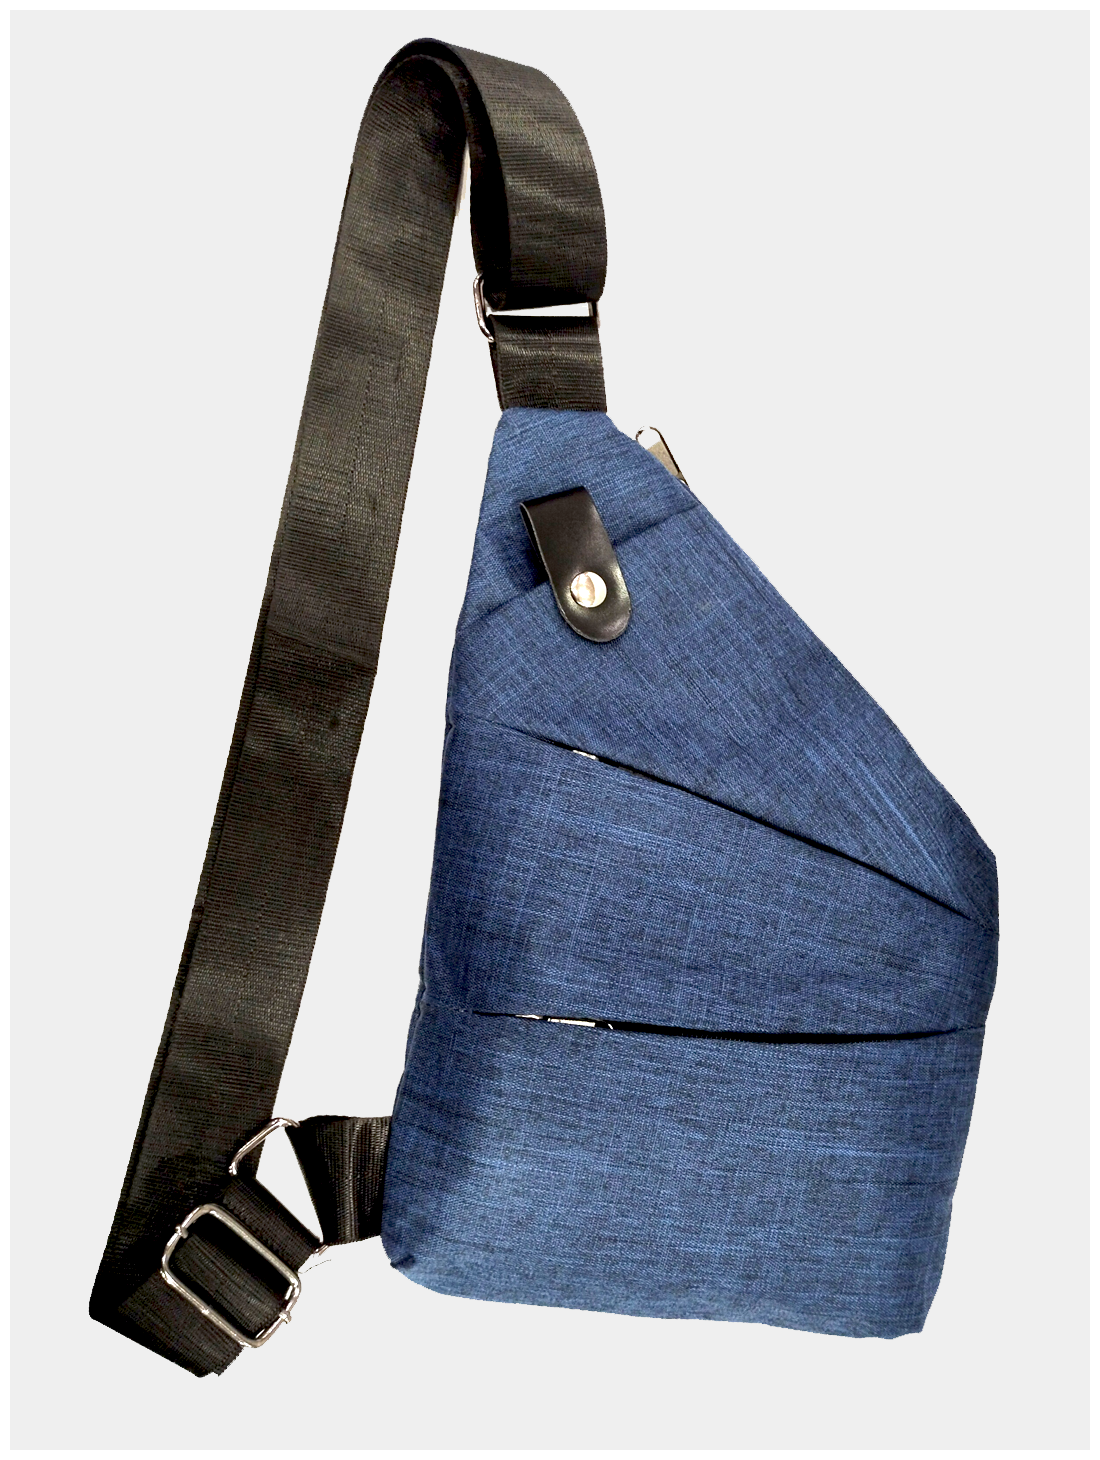 Рюкзак однолямочный, текстильный, синий